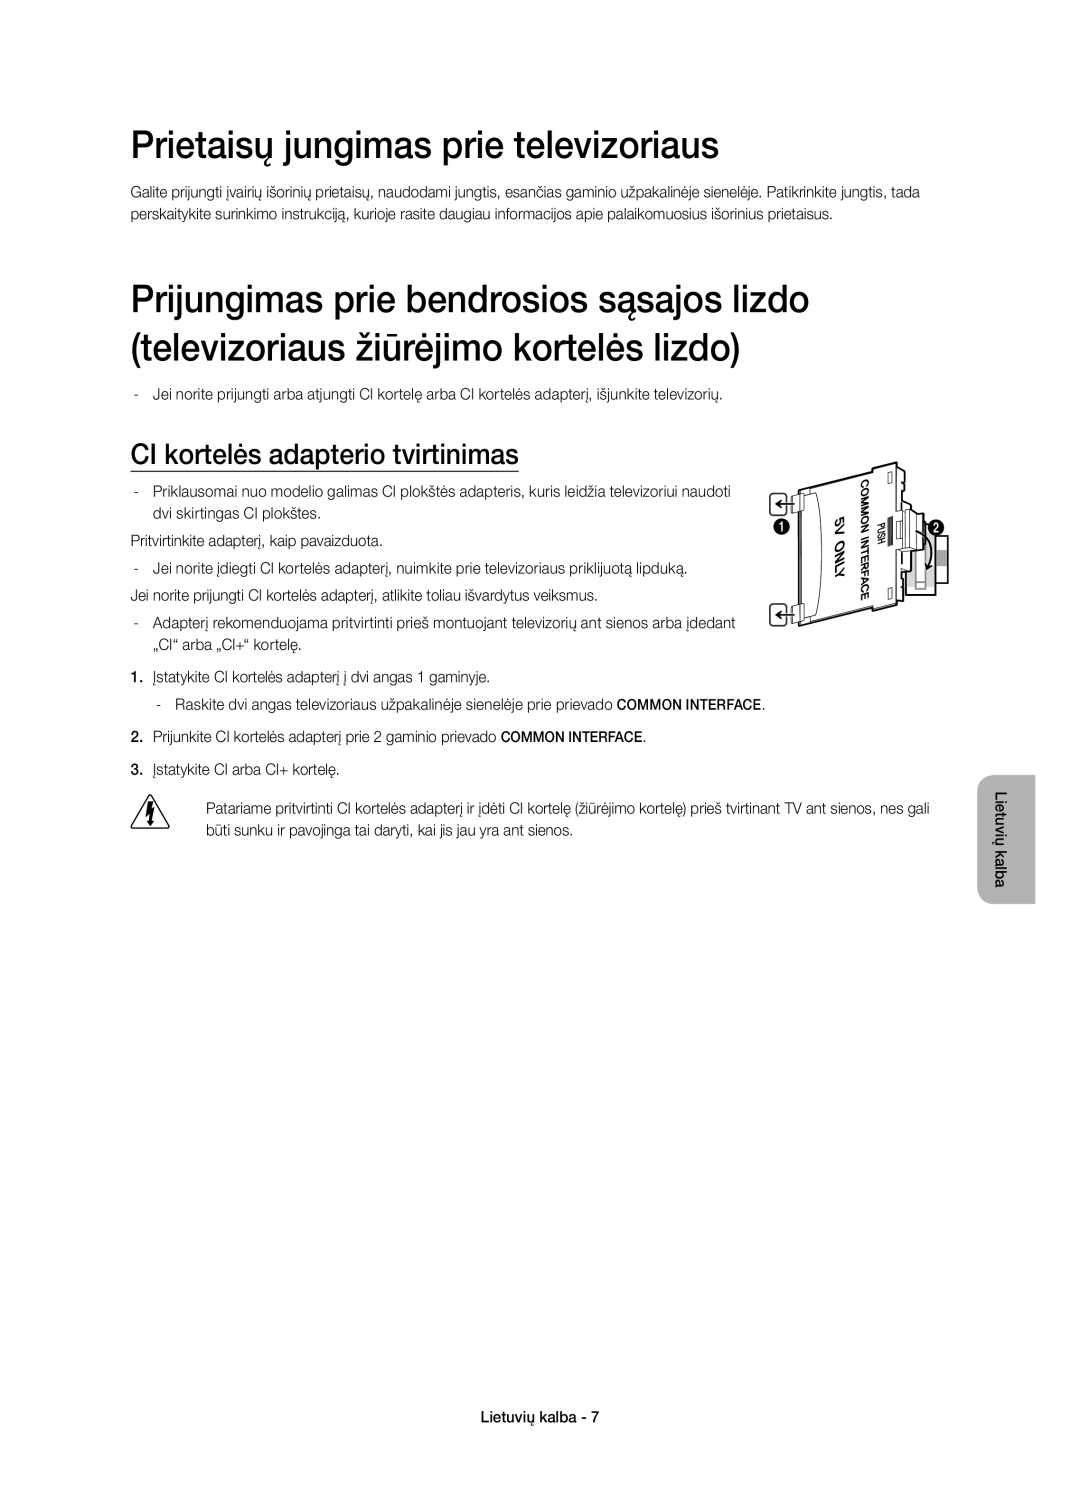 Samsung UE55HU7200SXXN, UE55HU7200SXZG manual Prietaisų jungimas prie televizoriaus, CI kortelės adapterio tvirtinimas 